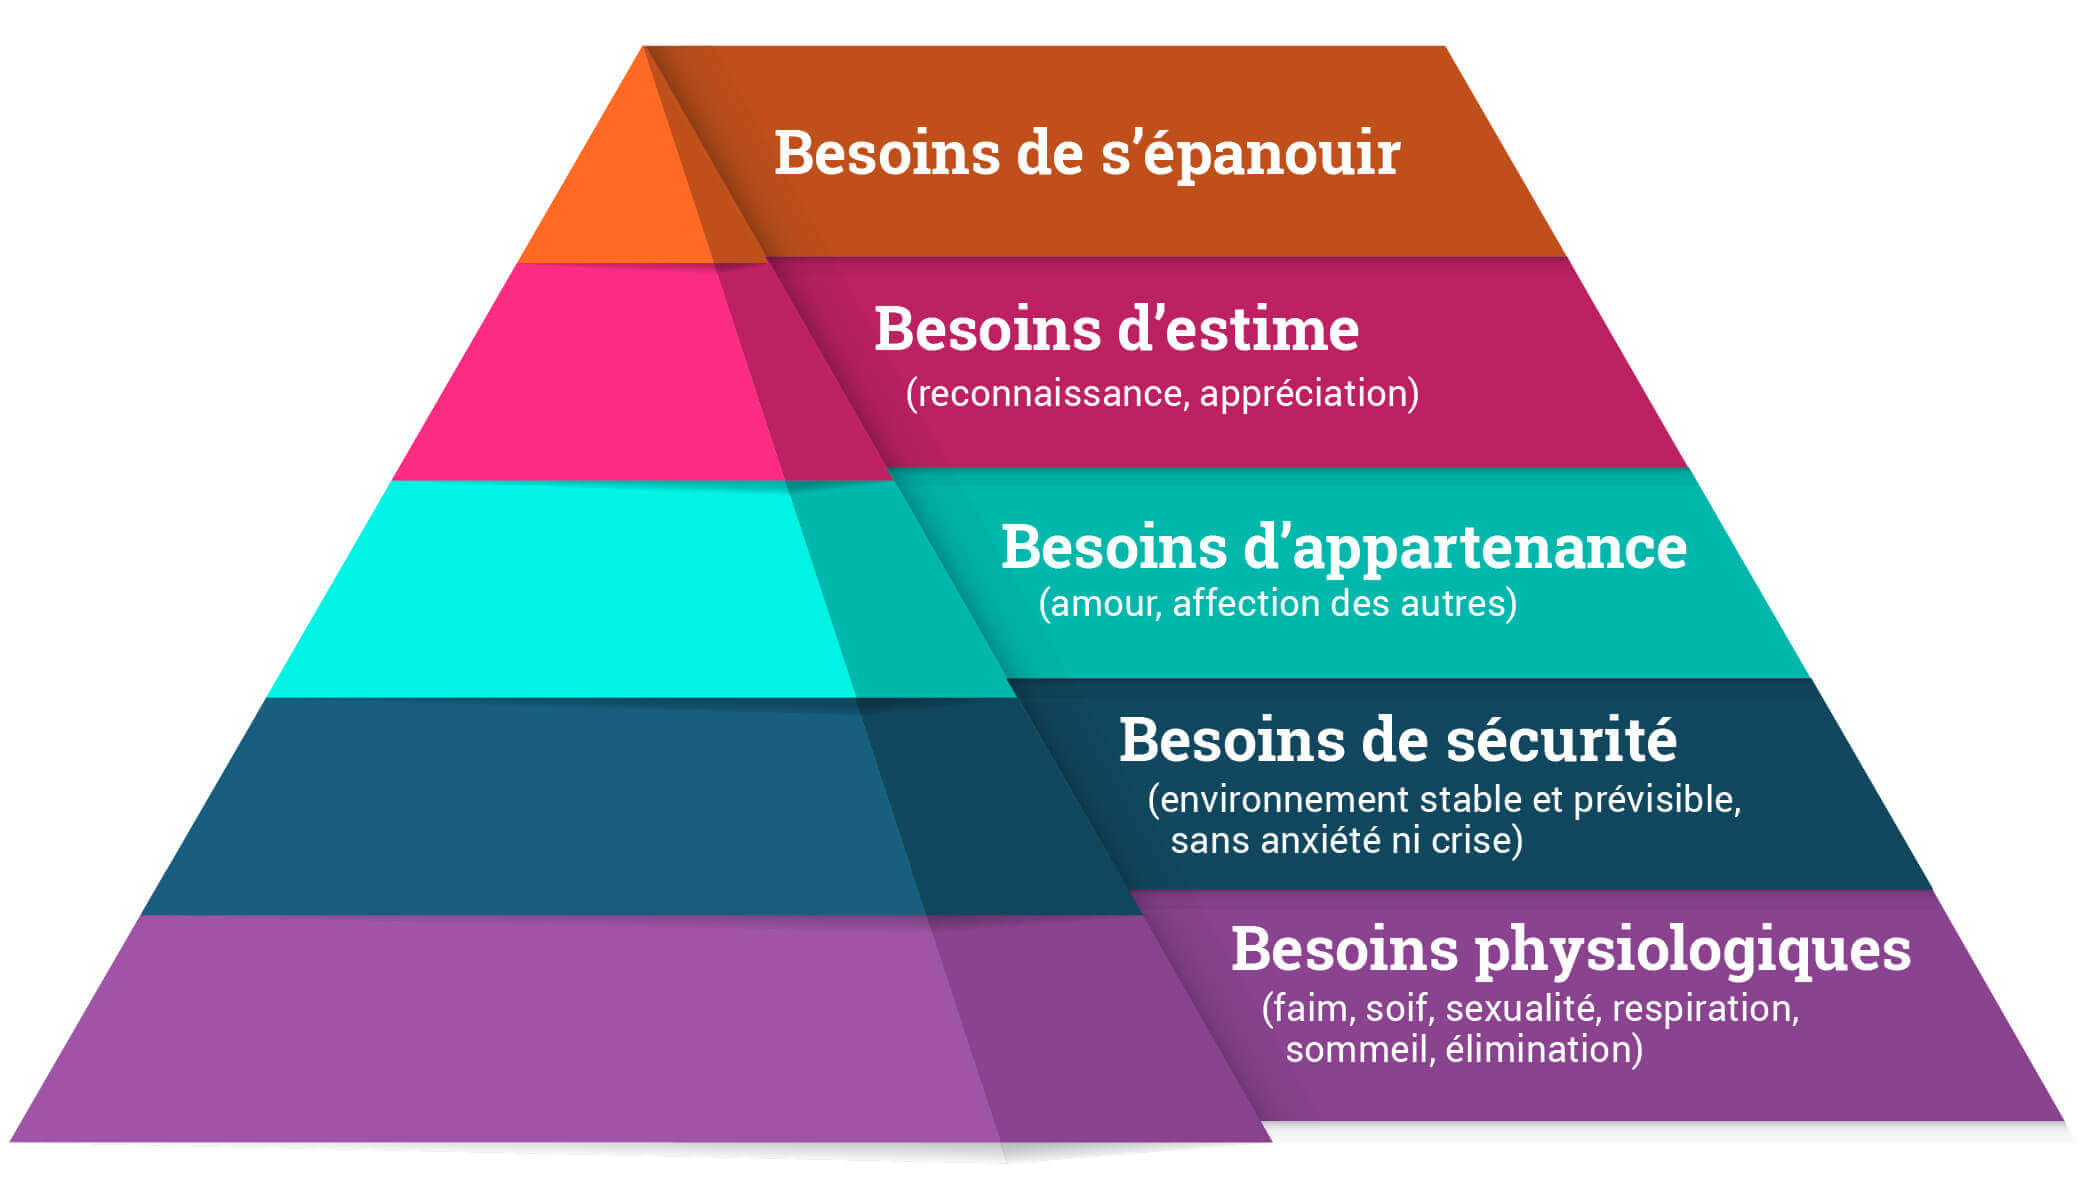 Une pyramide étagée présentant les cinq besoins de Maslow : physiologiques, de sécurité, d’appartenance, d’estime et de s’épanouir